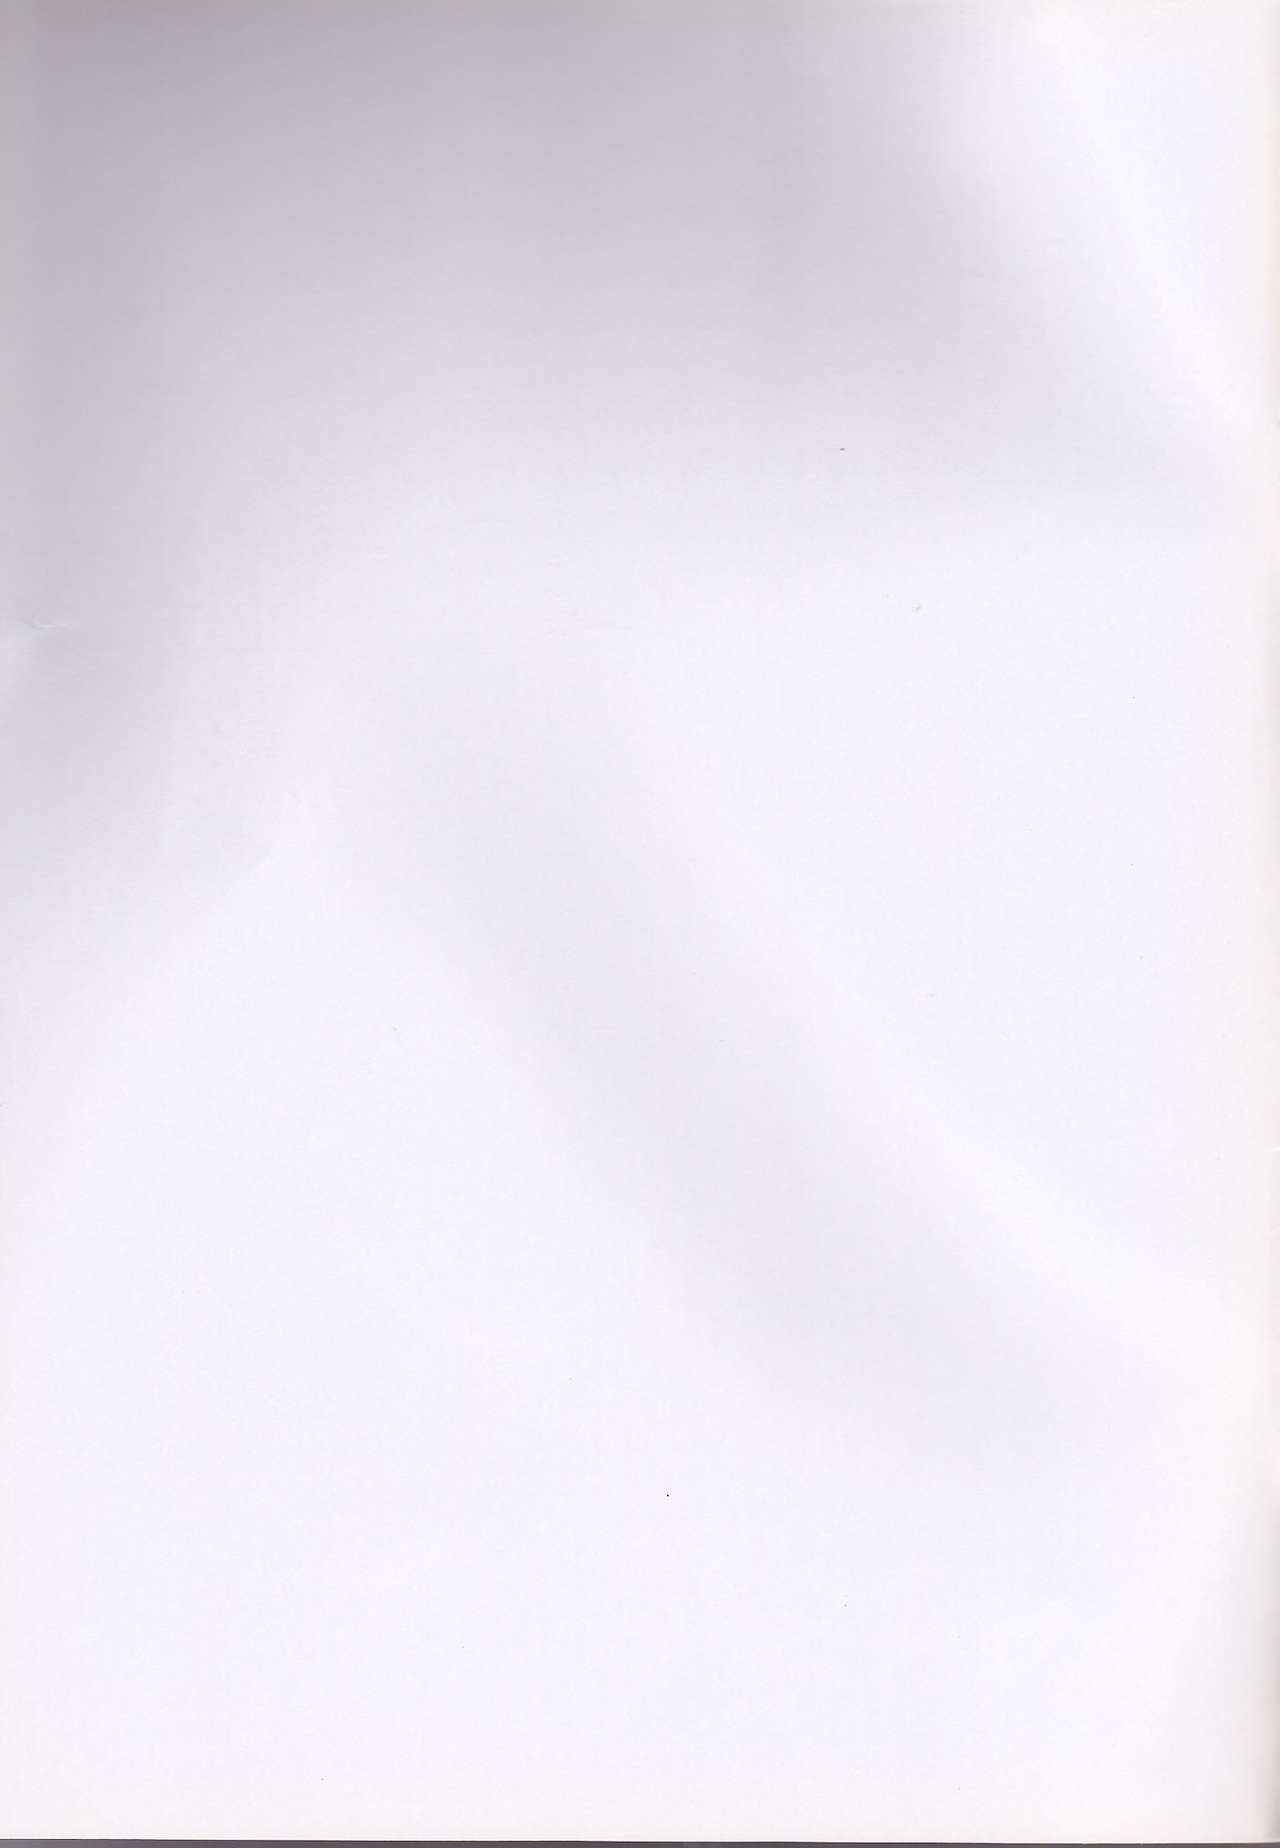 (C68) [Romantic Ren-Ai Mode (Fujinari Ayako)] eclair (Fullmetal Alchemist) [Korean] (C68) [ロマンティック恋愛モード (藤成アヤコ)] eclair (鋼の錬金術師) [韓国翻訳]